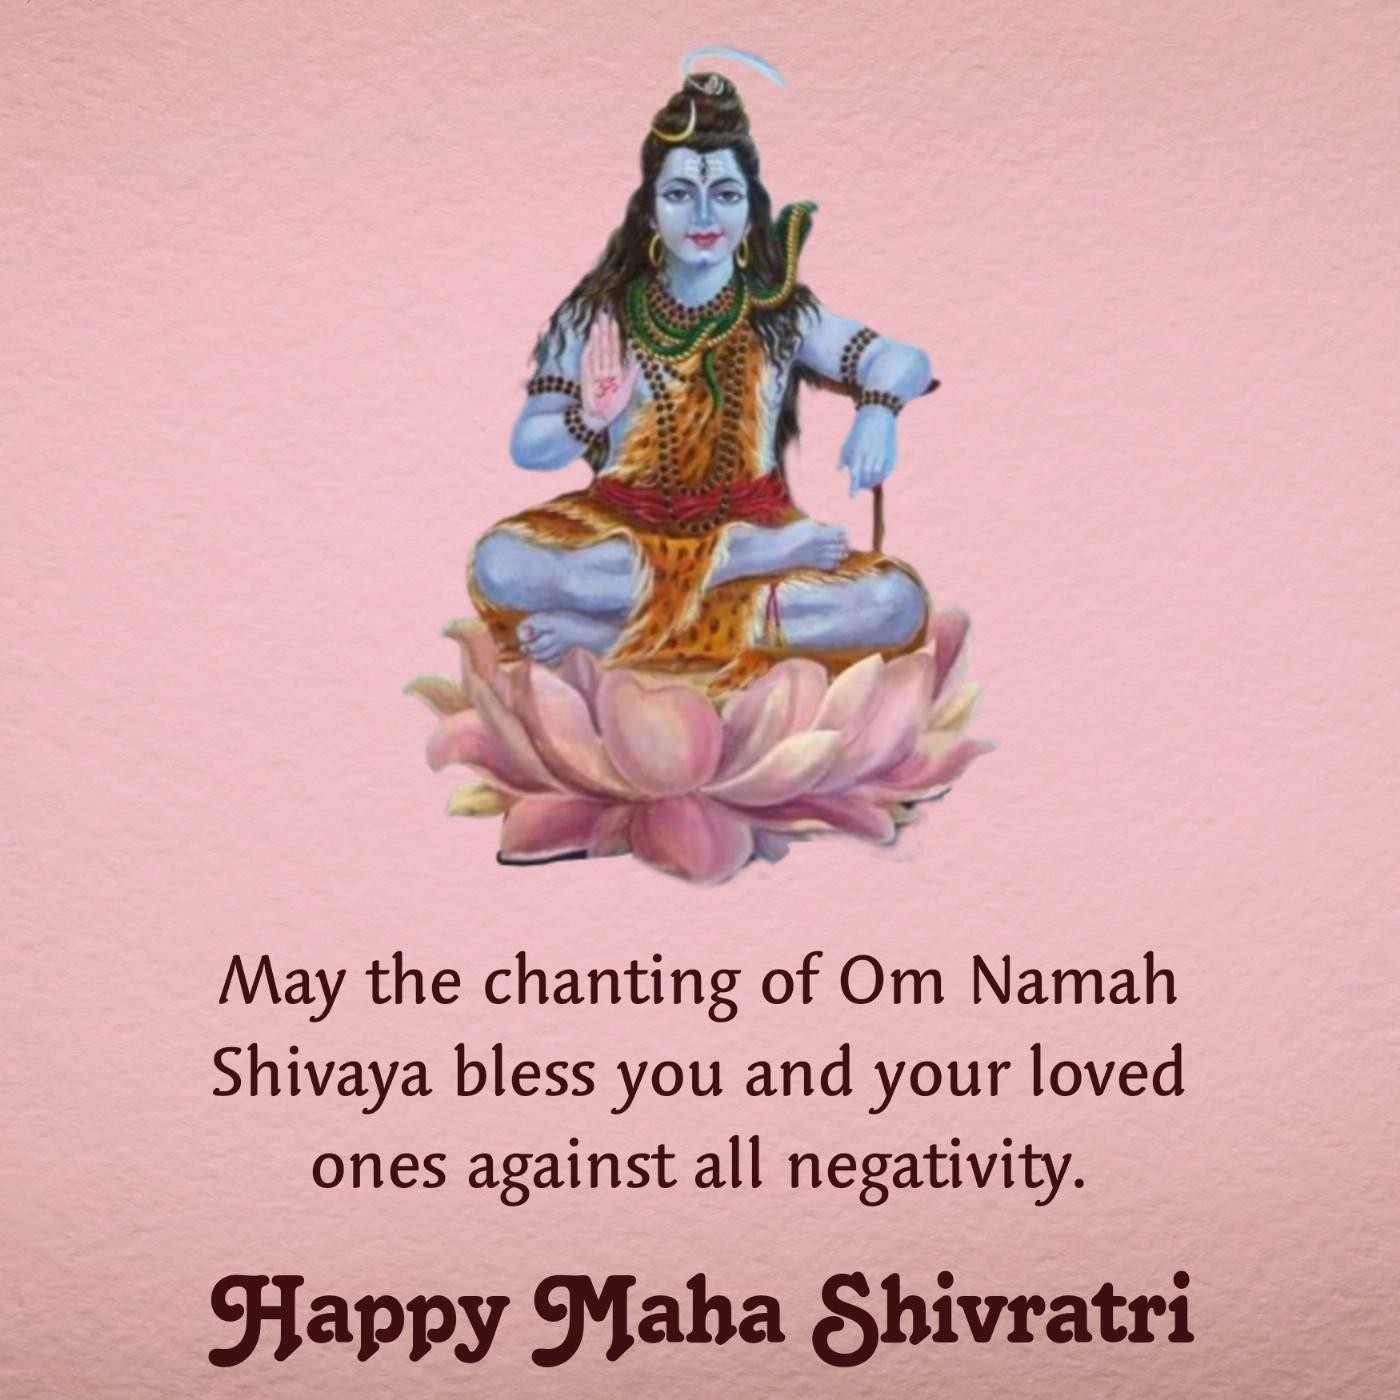 May the chanting of Om Namah Shivaya bless you